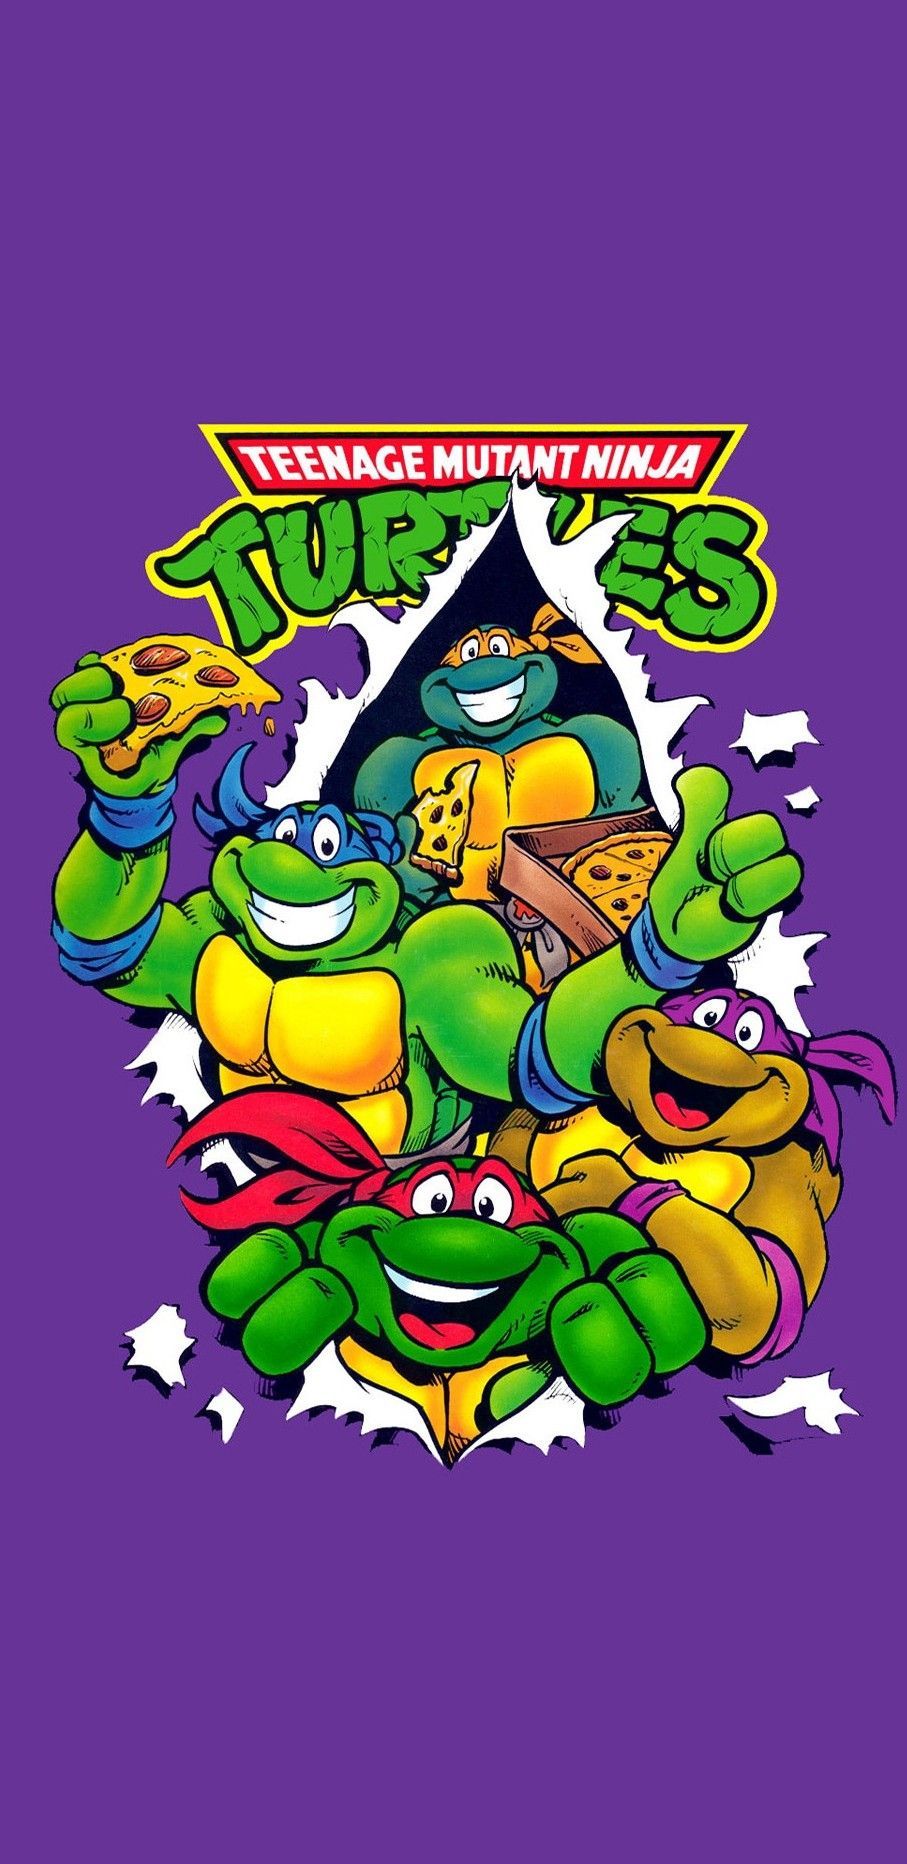 Teenage Mutant Ninja Turtles wallpaper. Turtle wallpaper, Ninja turtles artwork, Ninja turtles